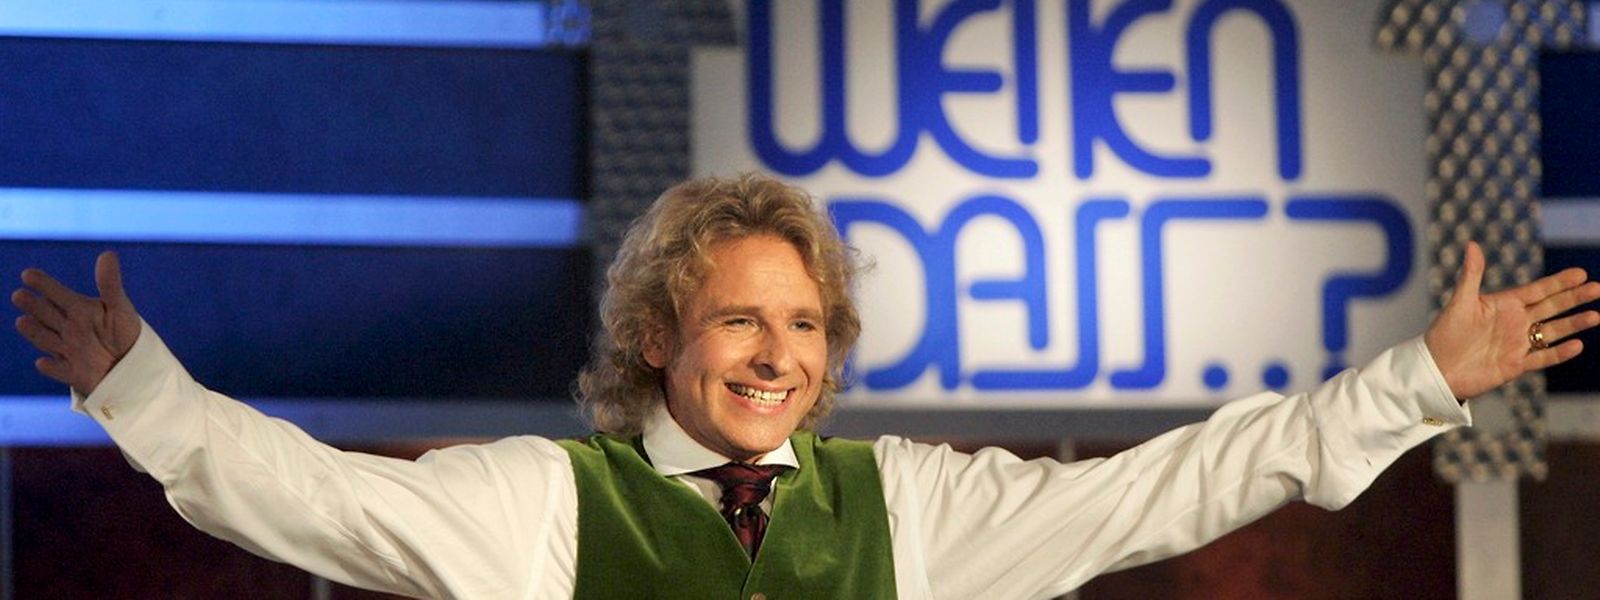 Thomas Gottschalk präsentierte 'Wetten dass..?', Europas erfoglreichste TV-Show, in ihrer besten Zeit.